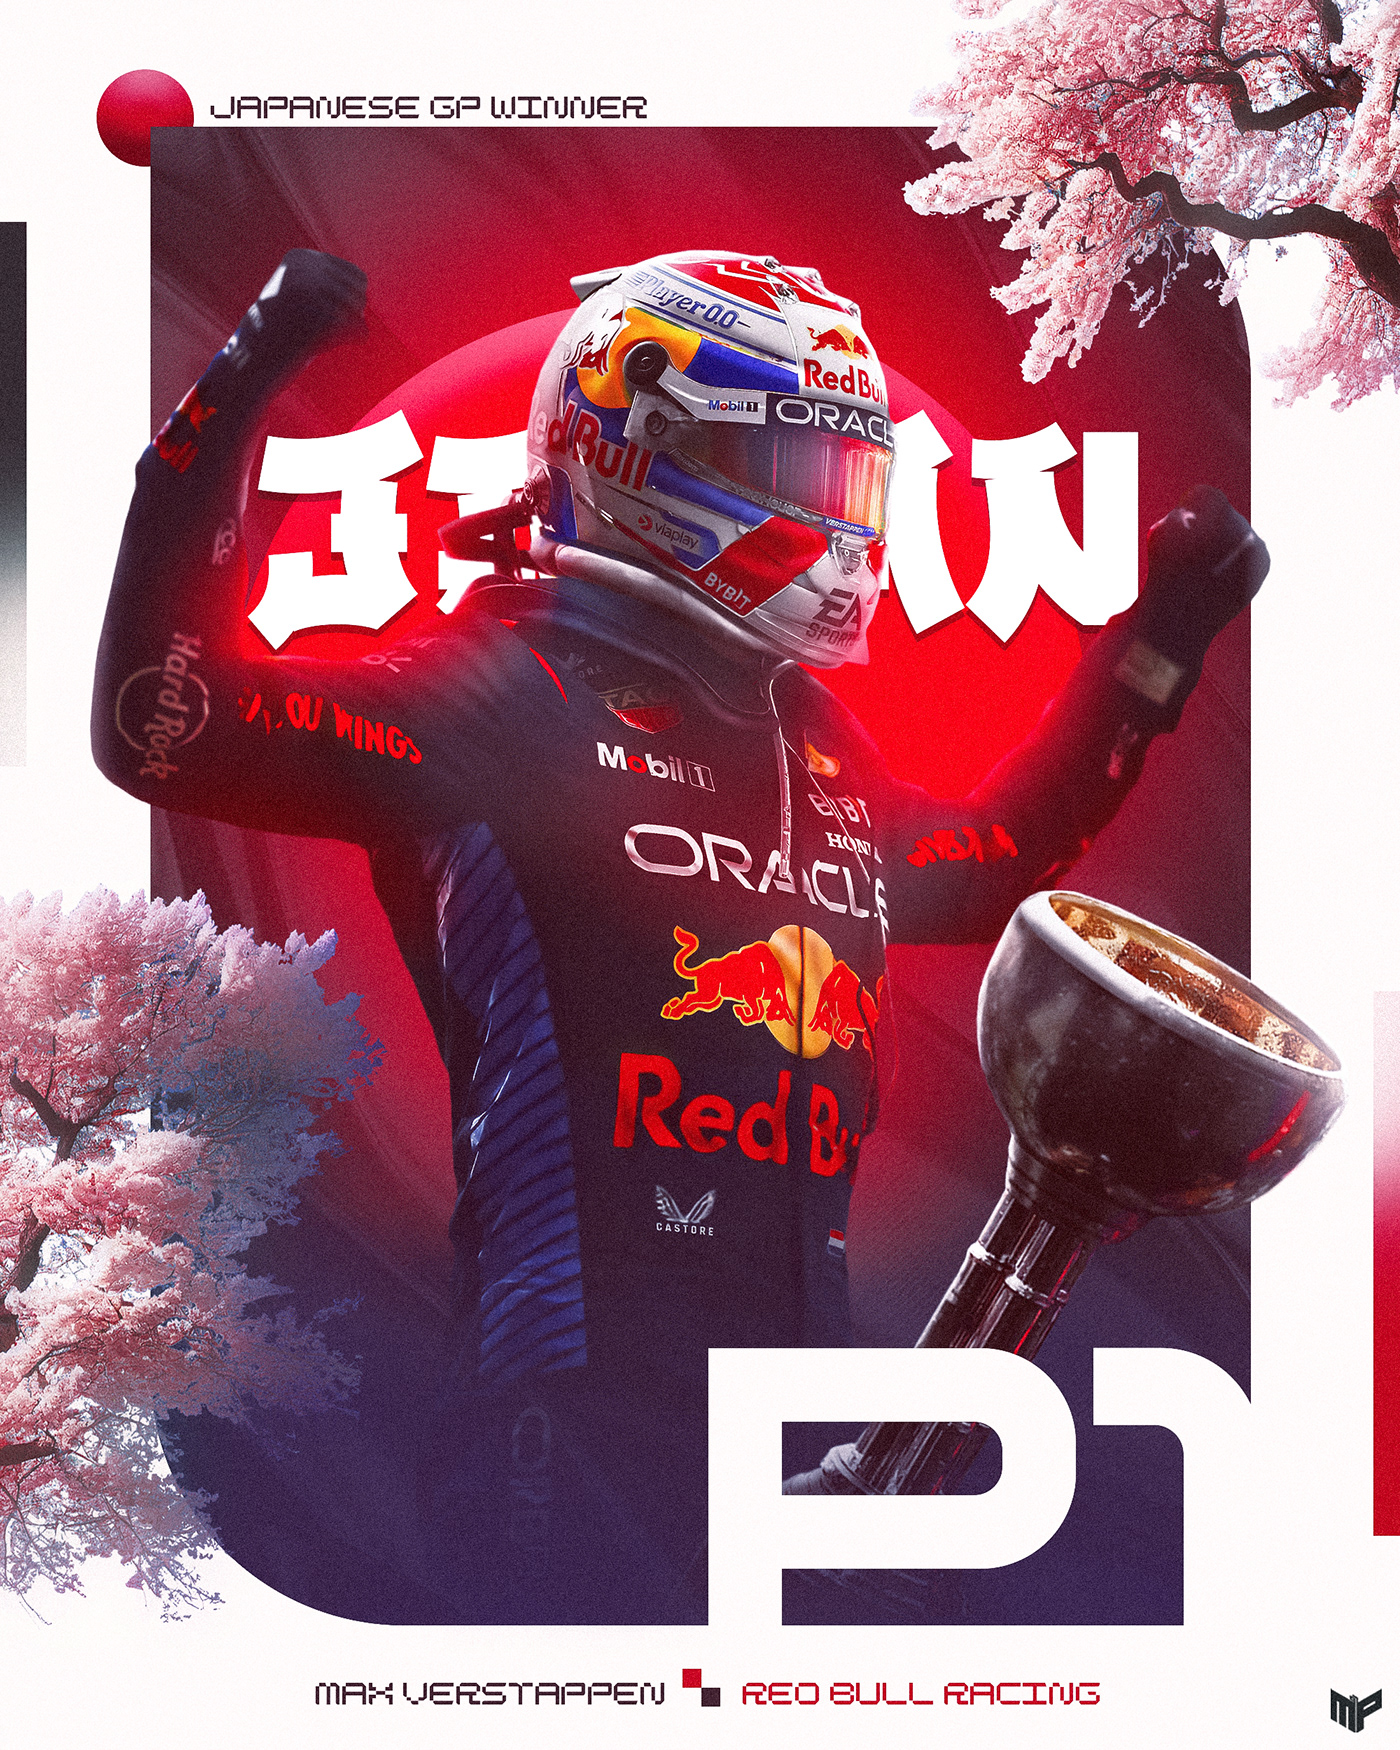 maxverstappen Verstappen RedBull REDBULLRACING f1 Formula1 design fanart poster photoshop